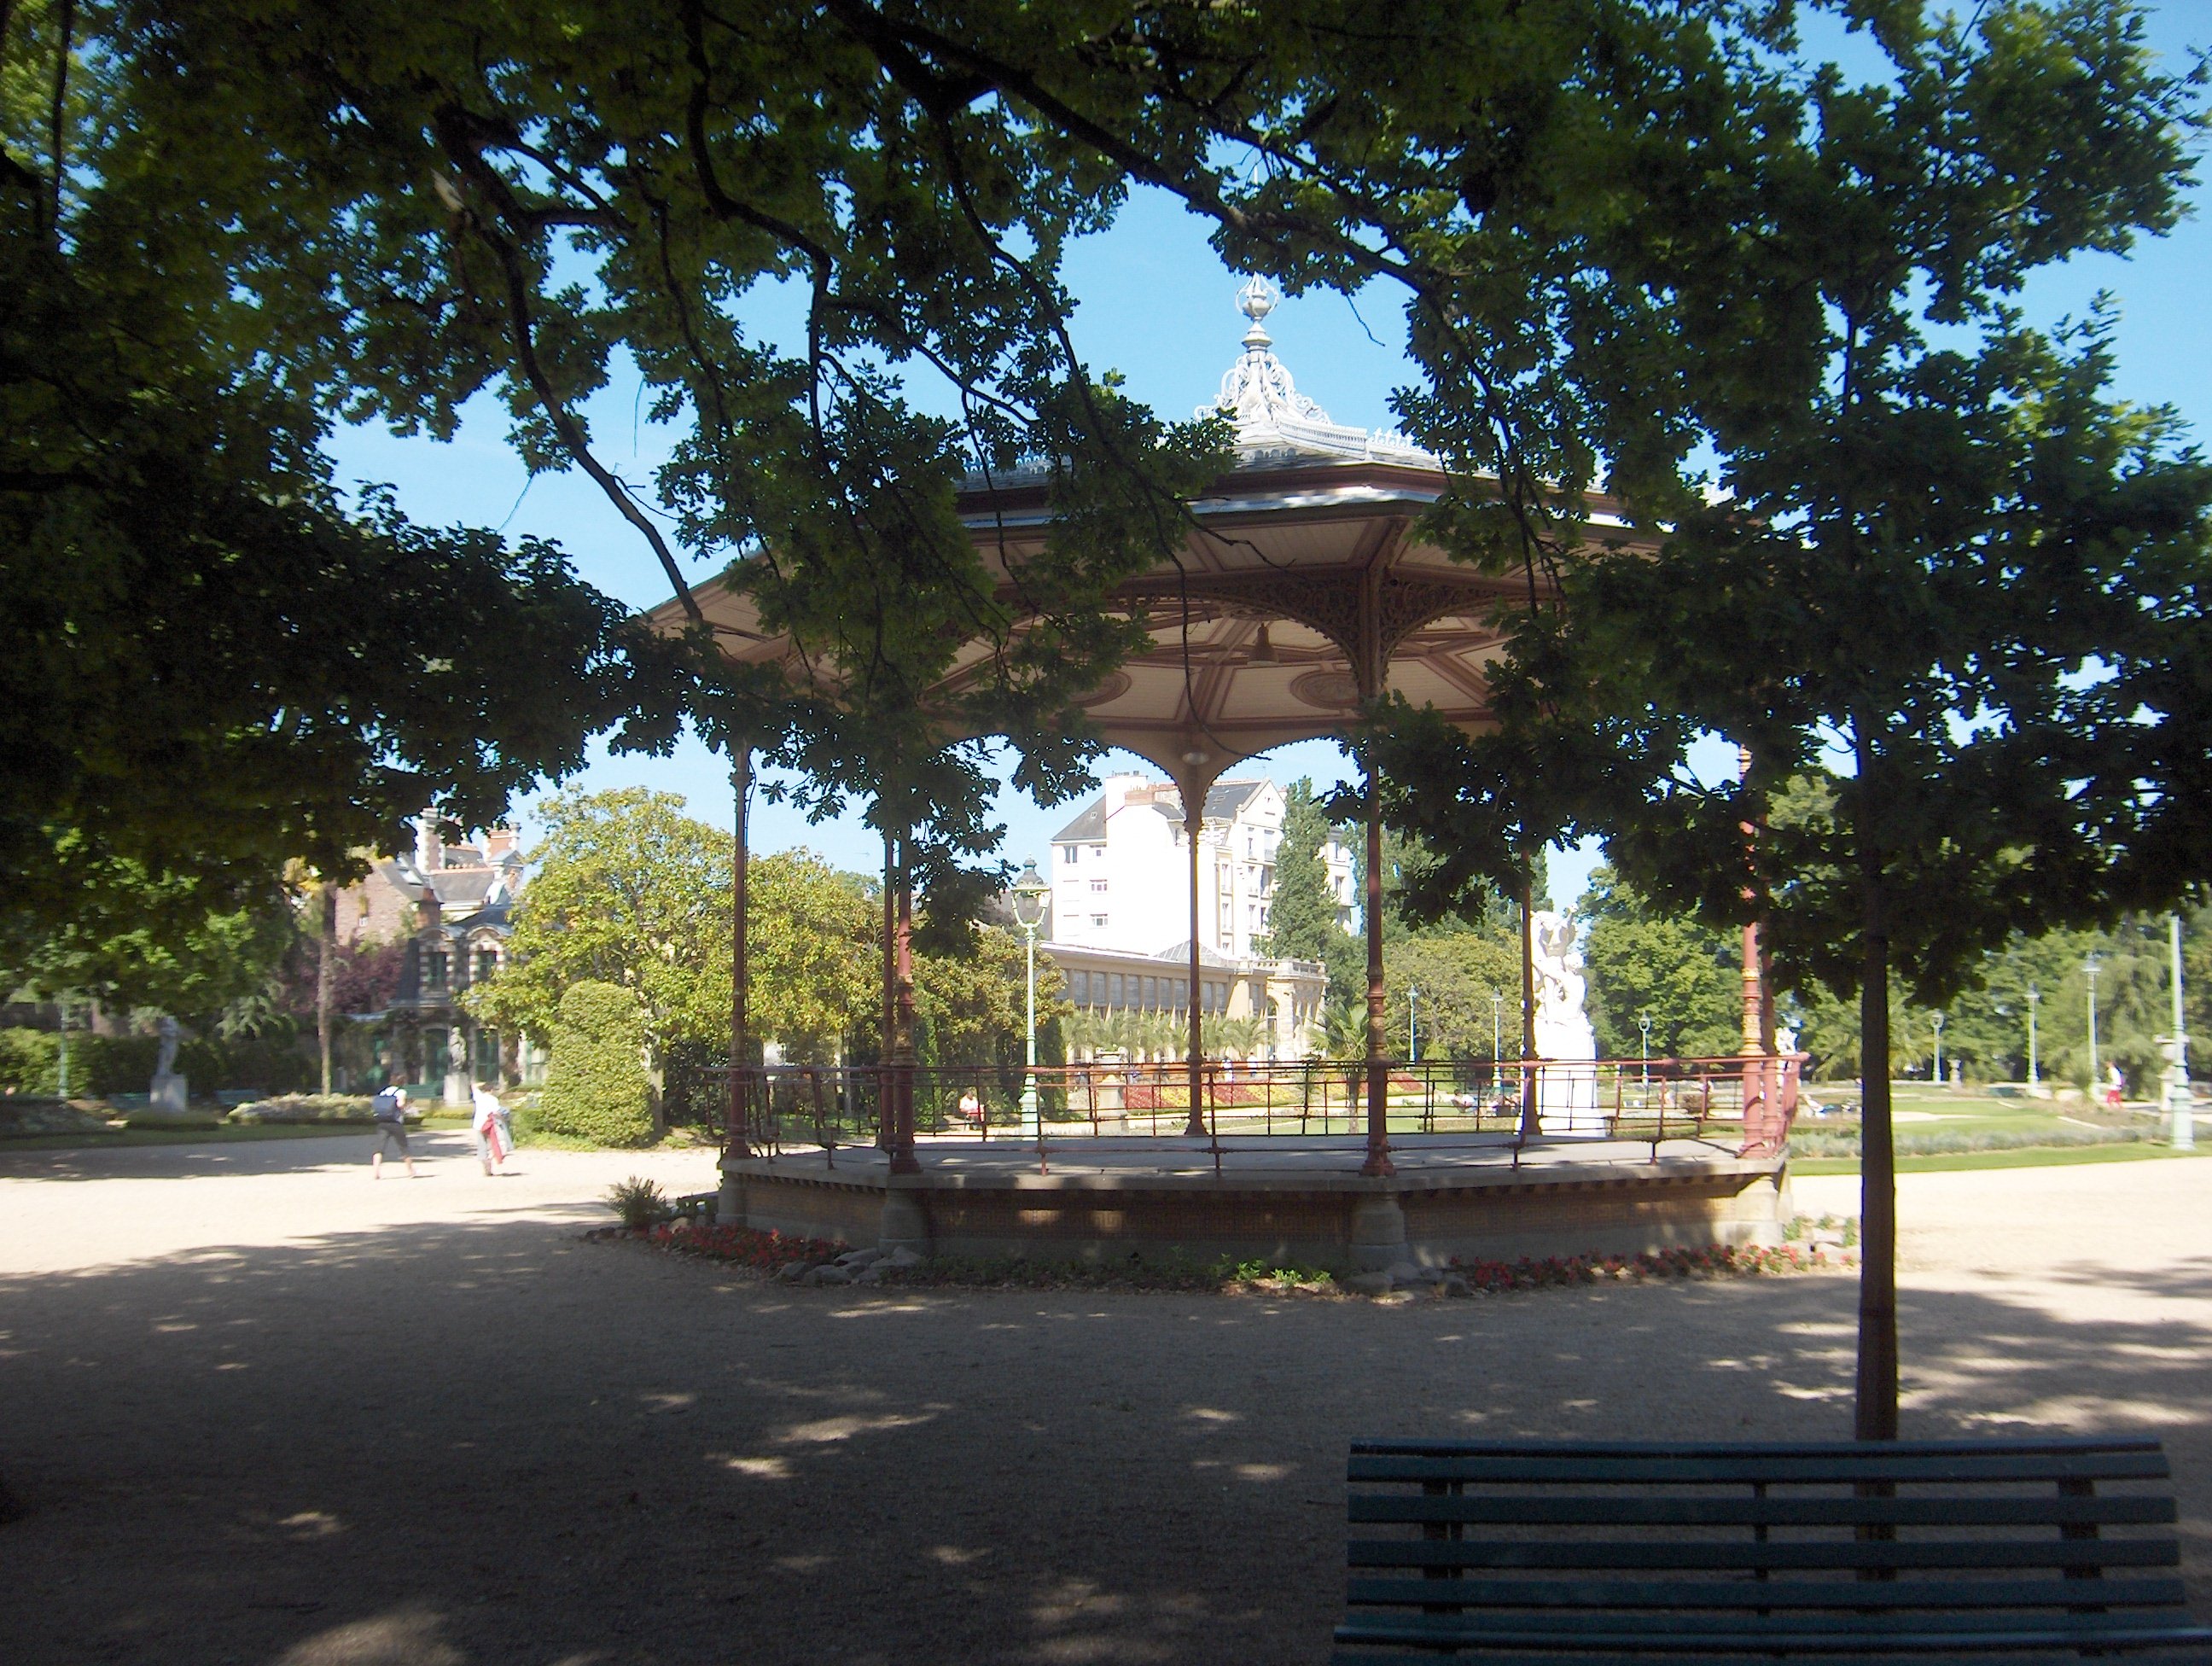 Un kiosque à musique en métal au milieu d'une étendue ouverte, avec deux arbres au premier plan.